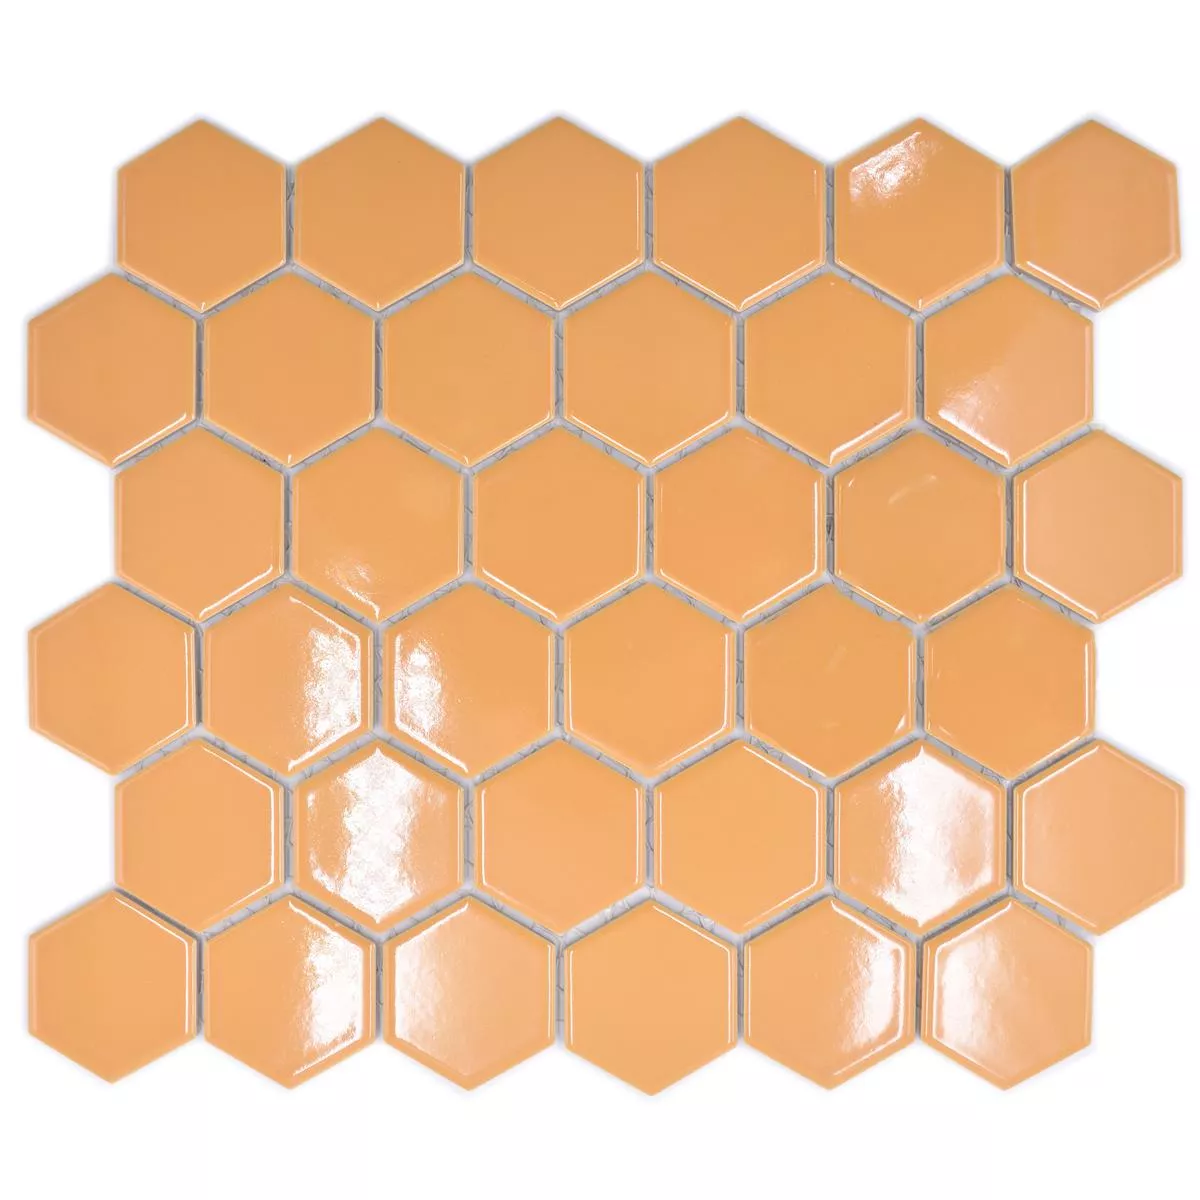 Keramikmosaik Salomon Hexagon Ockra Apelsin H51